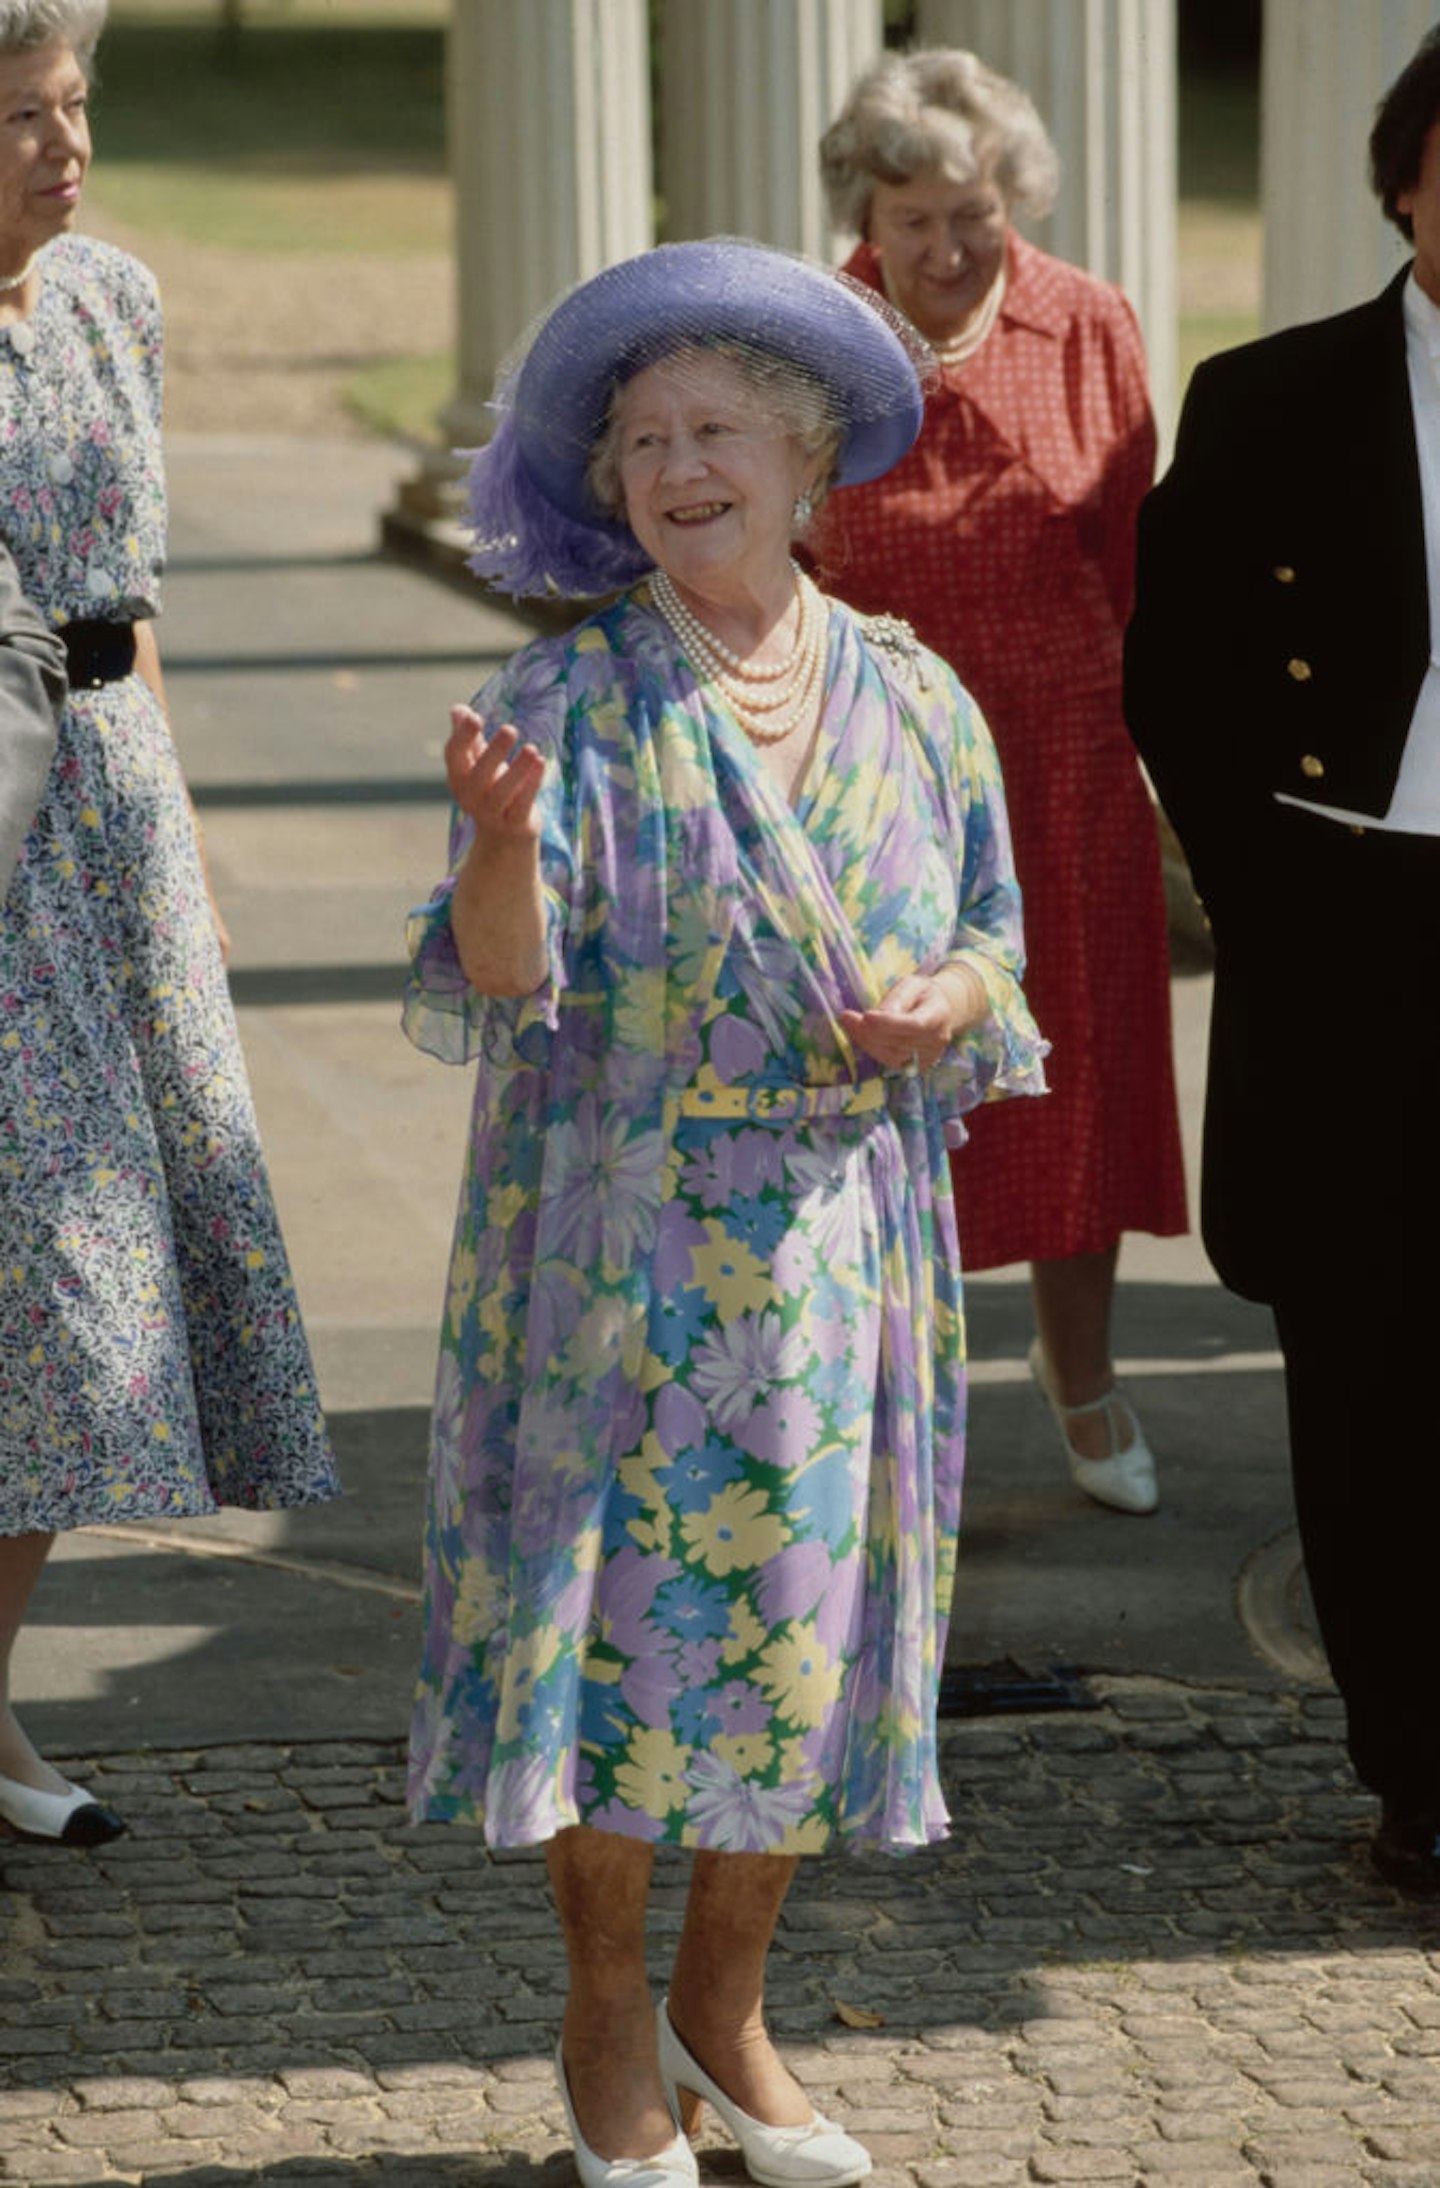 Queen Elizabeth The Queen Mother in the 1980s